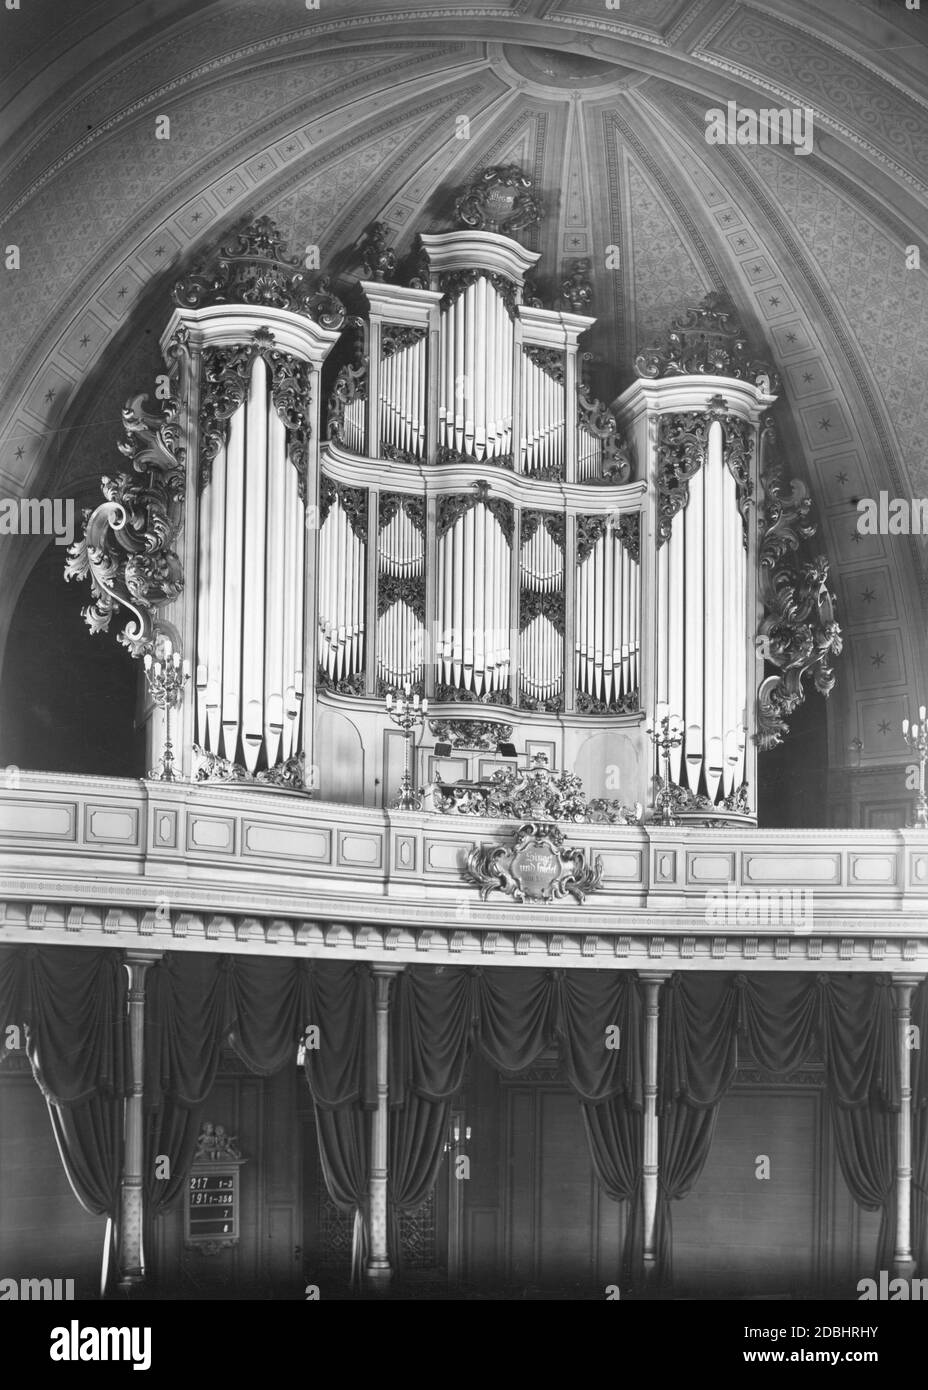 'Ansicht der Orgel in der Berliner Parochialkirche 1933, darunter ein Schild mit der Inschrift: 'Singet und spielt dem Herrn'.' Stockfoto